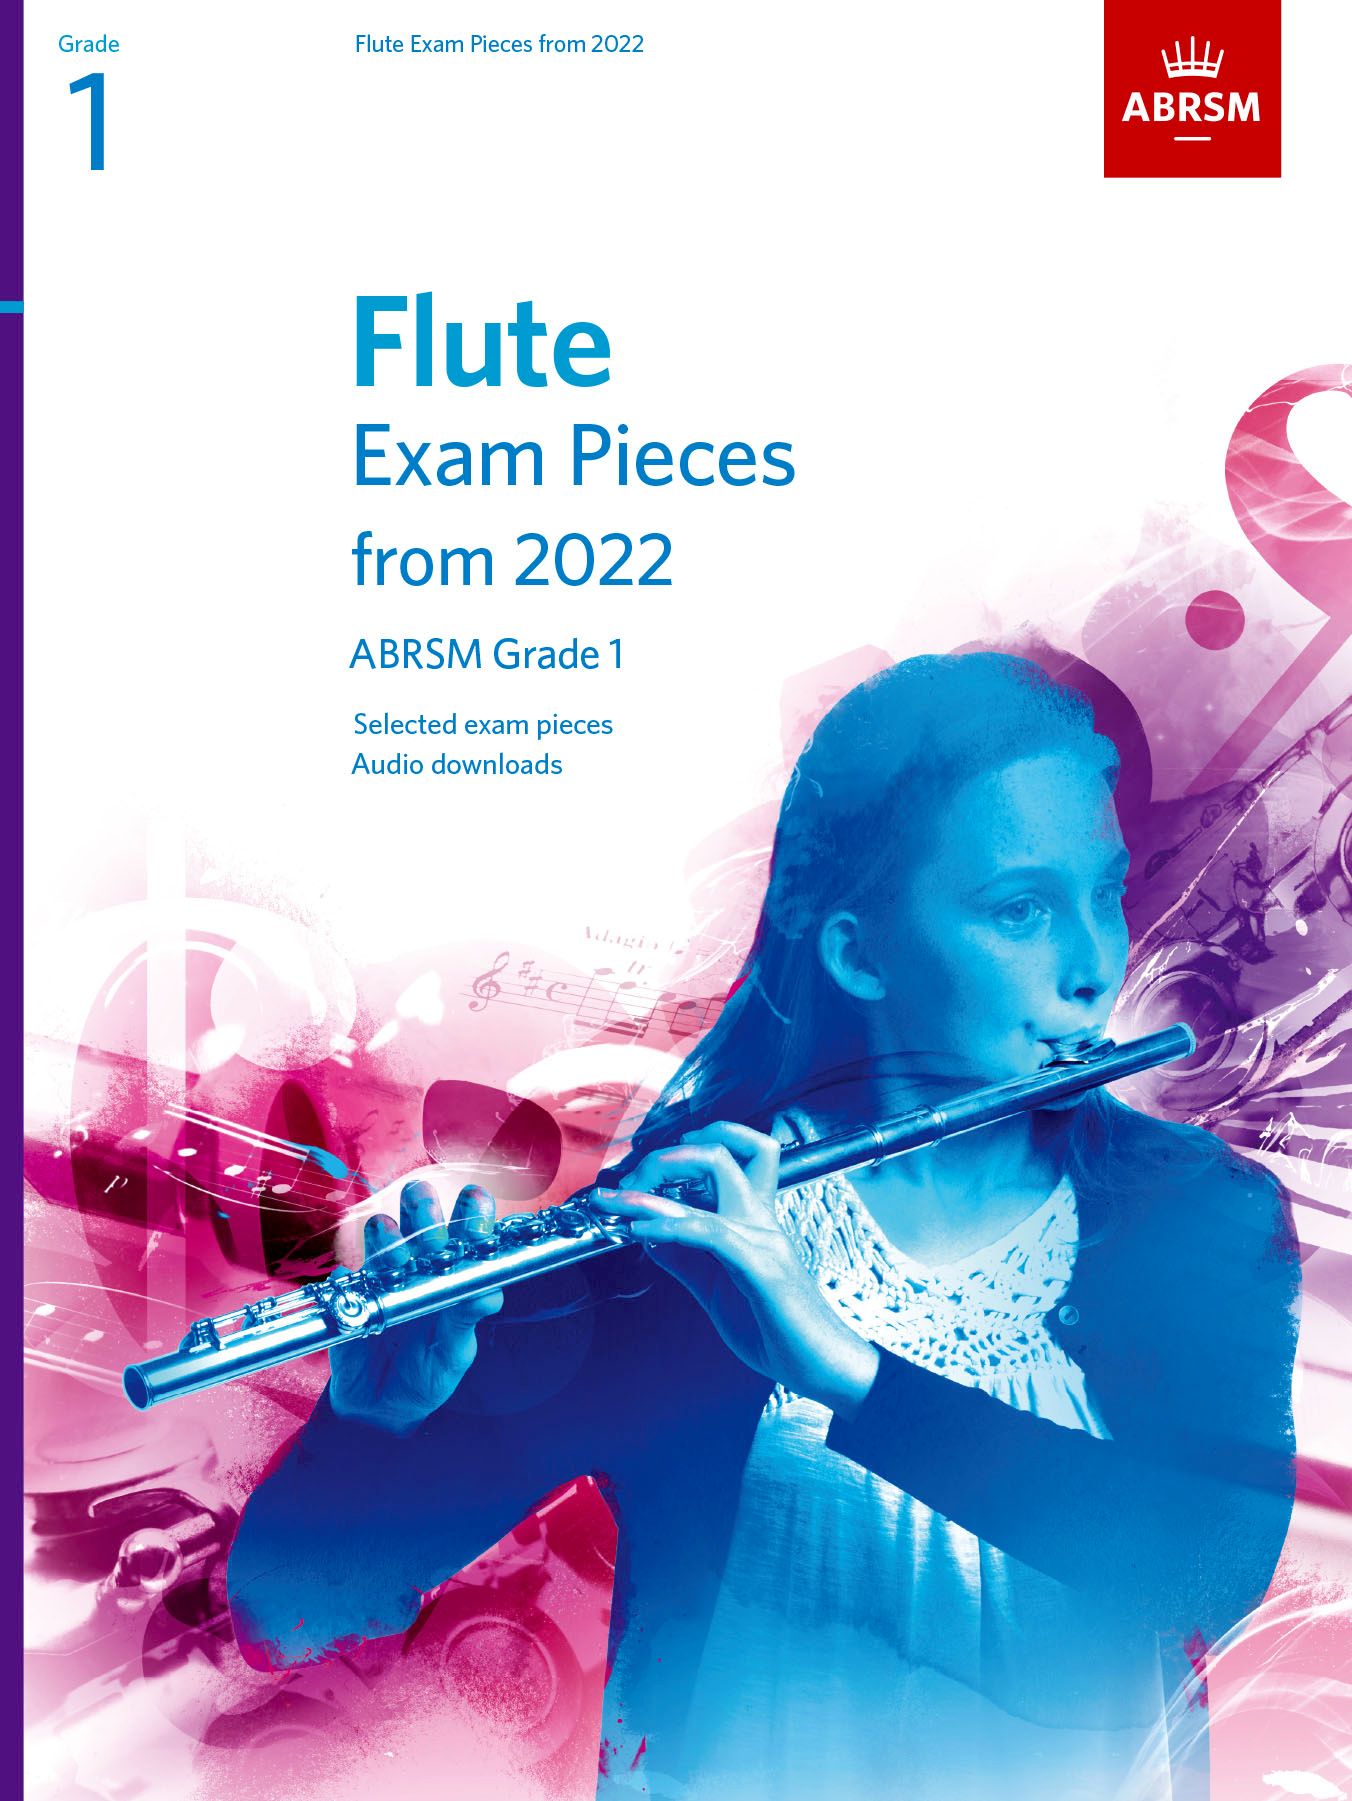 Flute Exam Pieces from 2022, ABRSM Grade 1